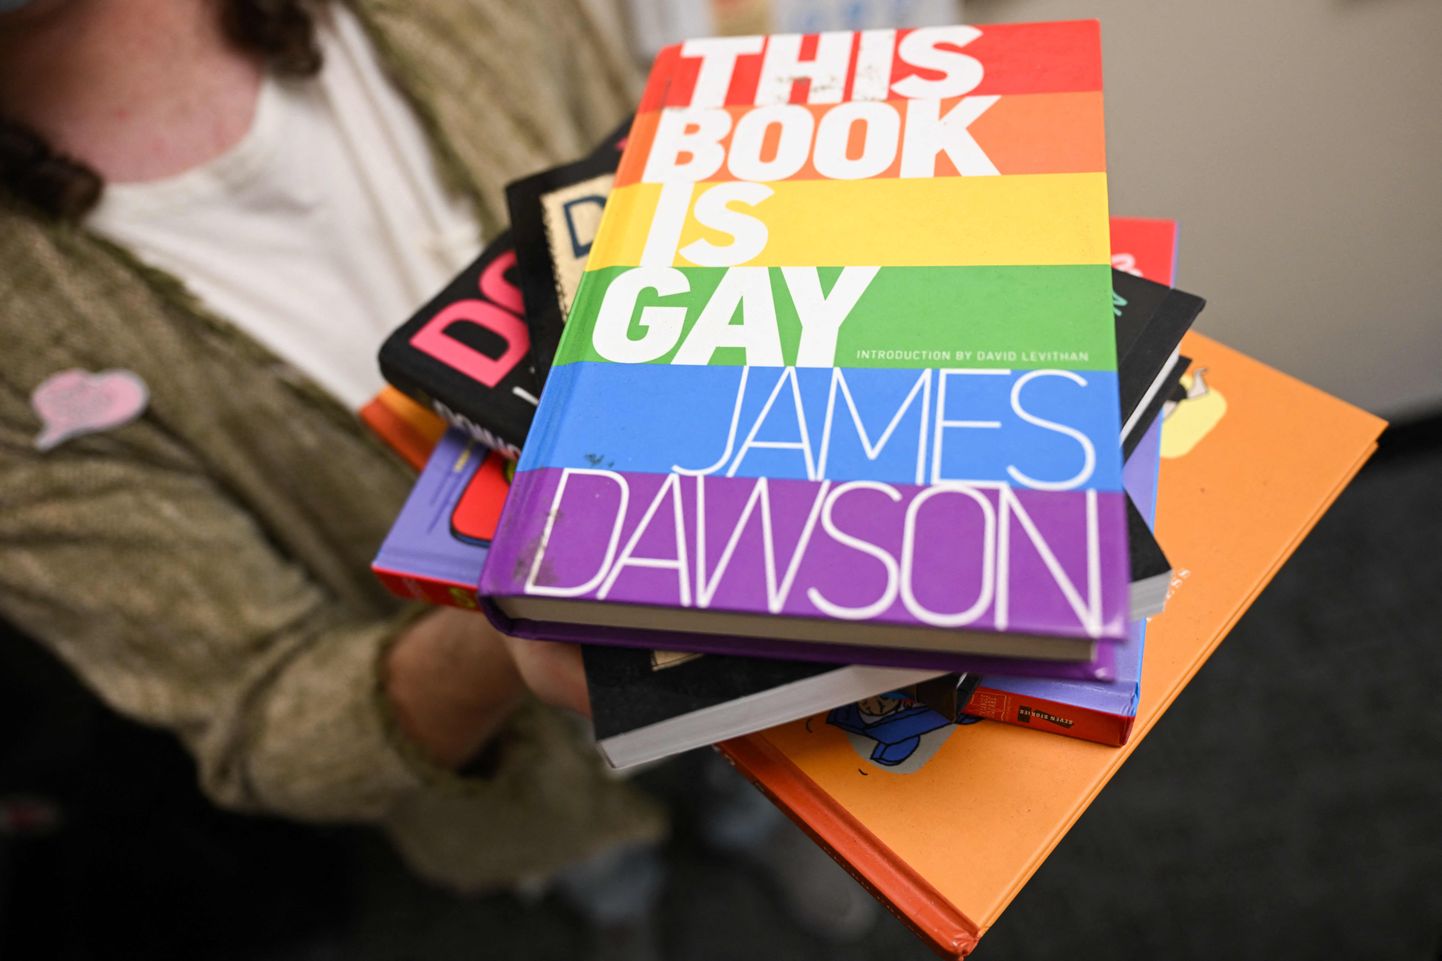 Pilt on illustreeriv. Fotol Juno Dawsoni raamat "This Book is Gay".